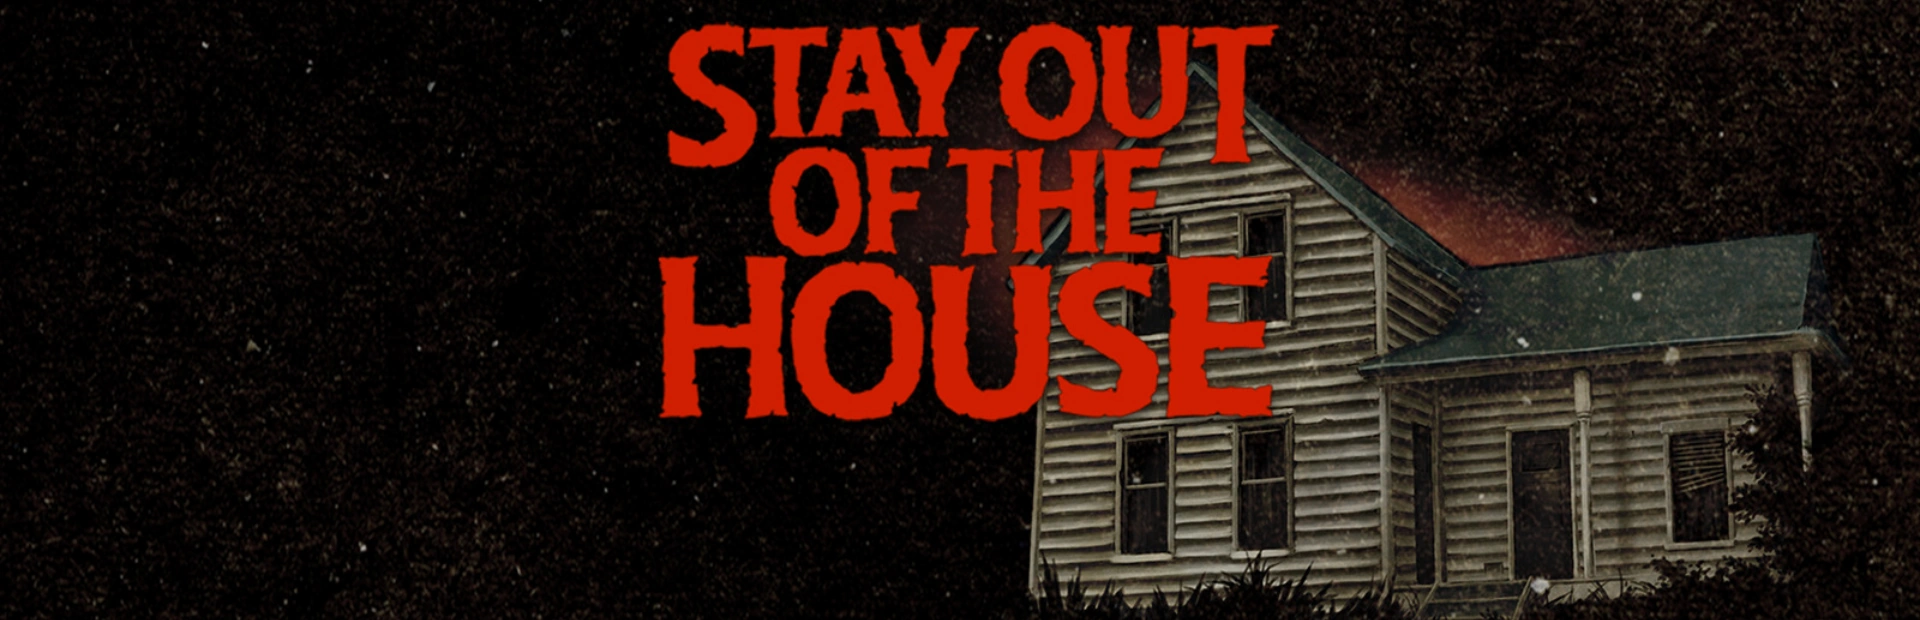 دانلود بازی Stay Out of the House برای کامپیوتر | گیمباتو